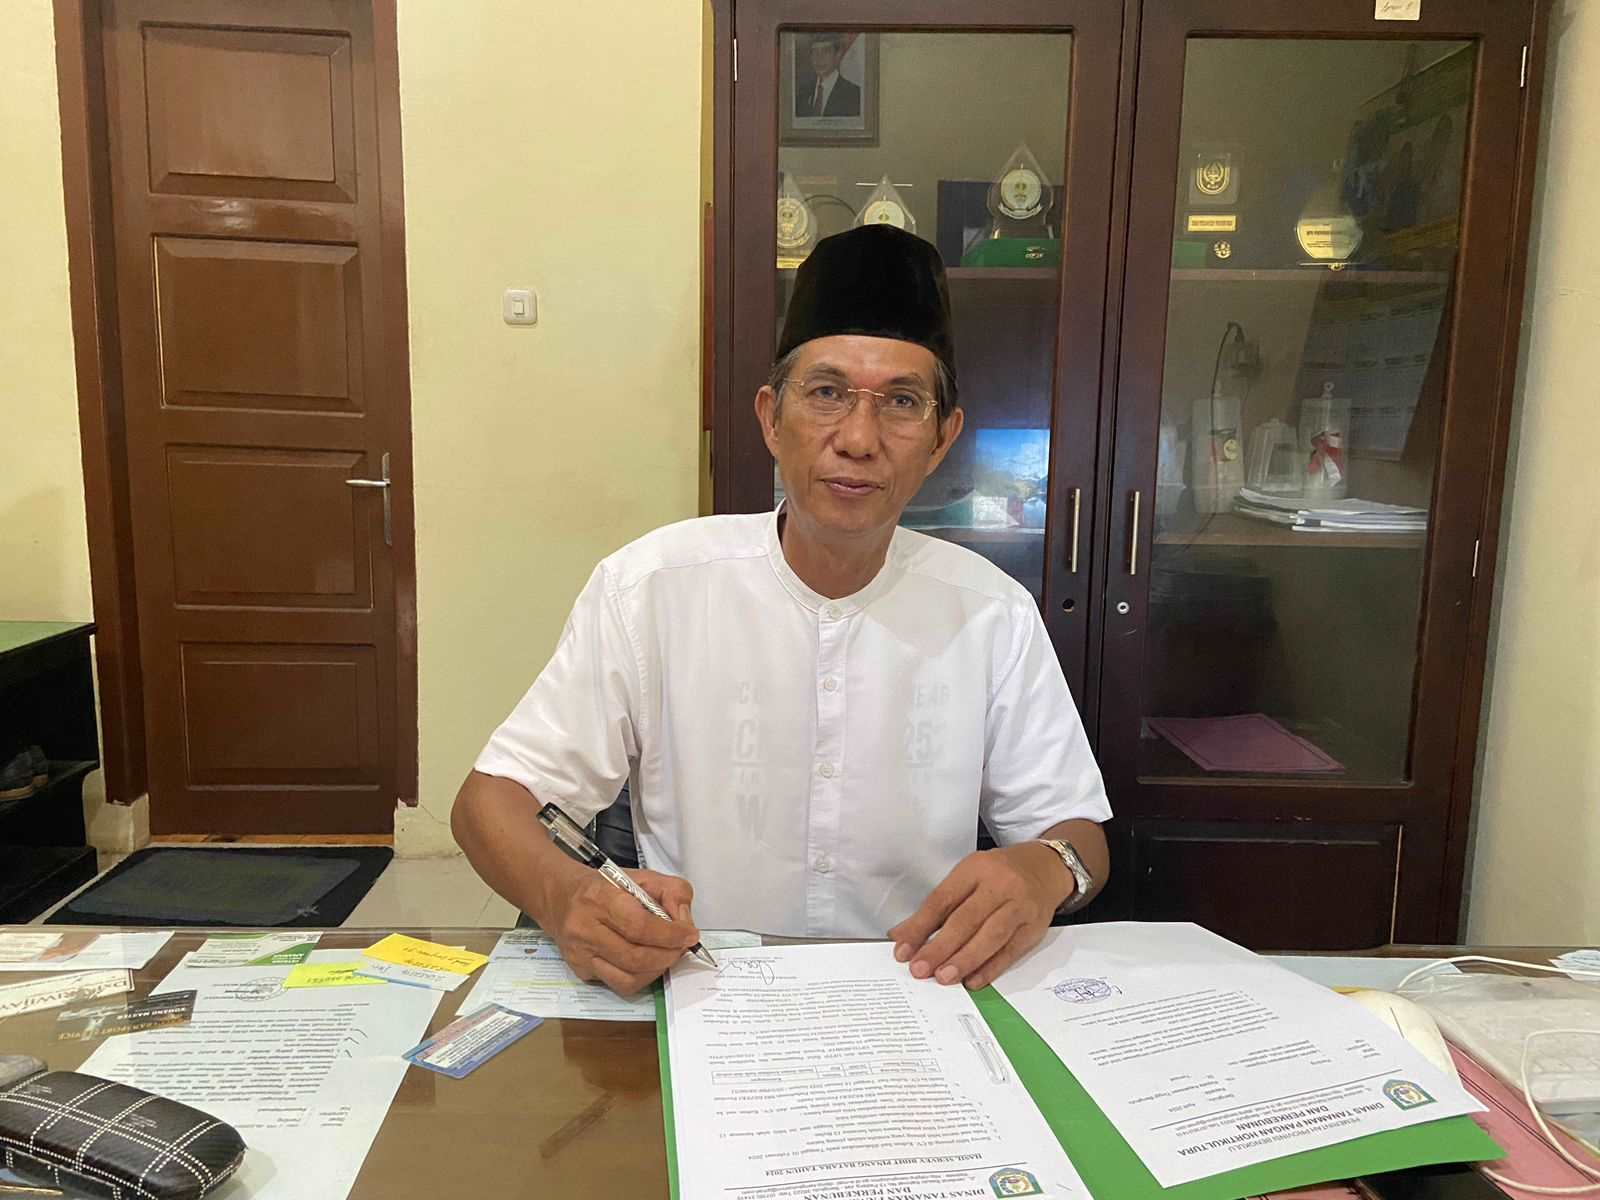 Dinas TPHP Provinsi Bengkulu Keluarkan Surat Edaran kepada 6 Bupati, Minta Awasi Pabrik Kelapa Sawit